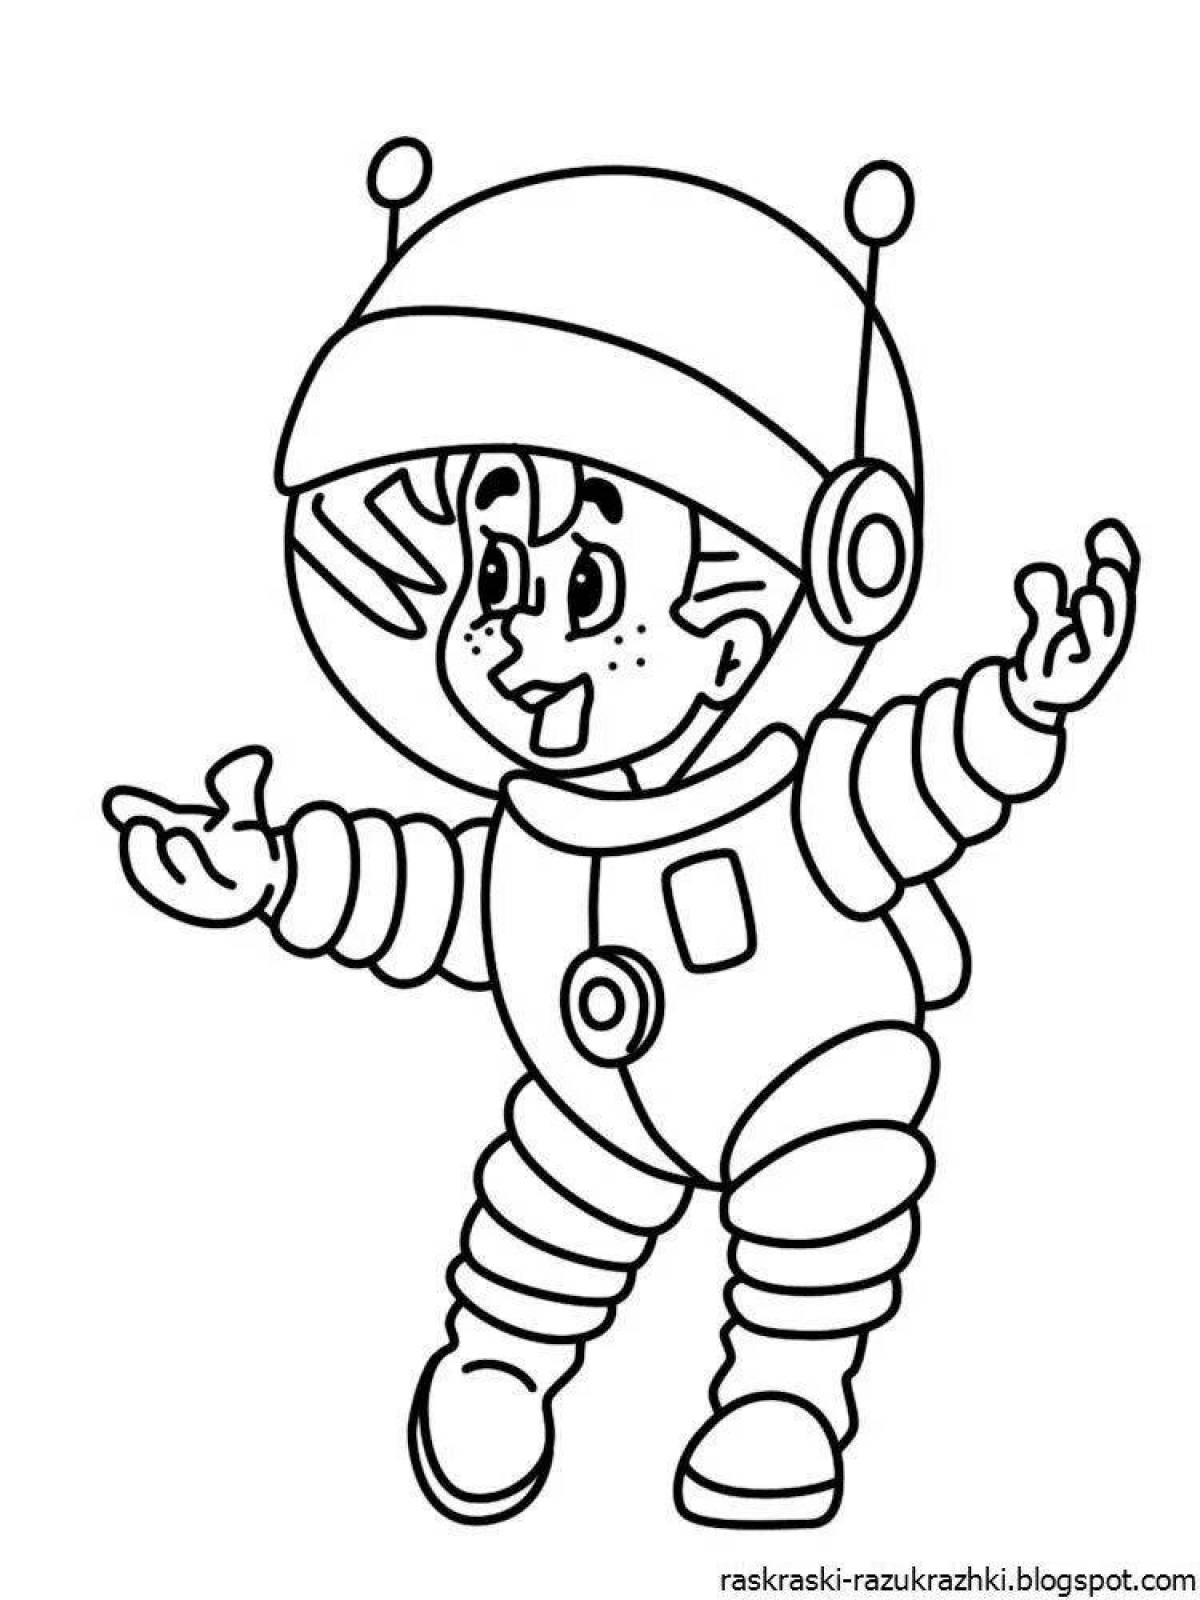 Рисунок космонавта в скафандре. Космонавт раскраска для детей. Космонавт раскраска для малышей. Детские раскраски космонавты. Раскраска Космонавта в скафандре для детей.